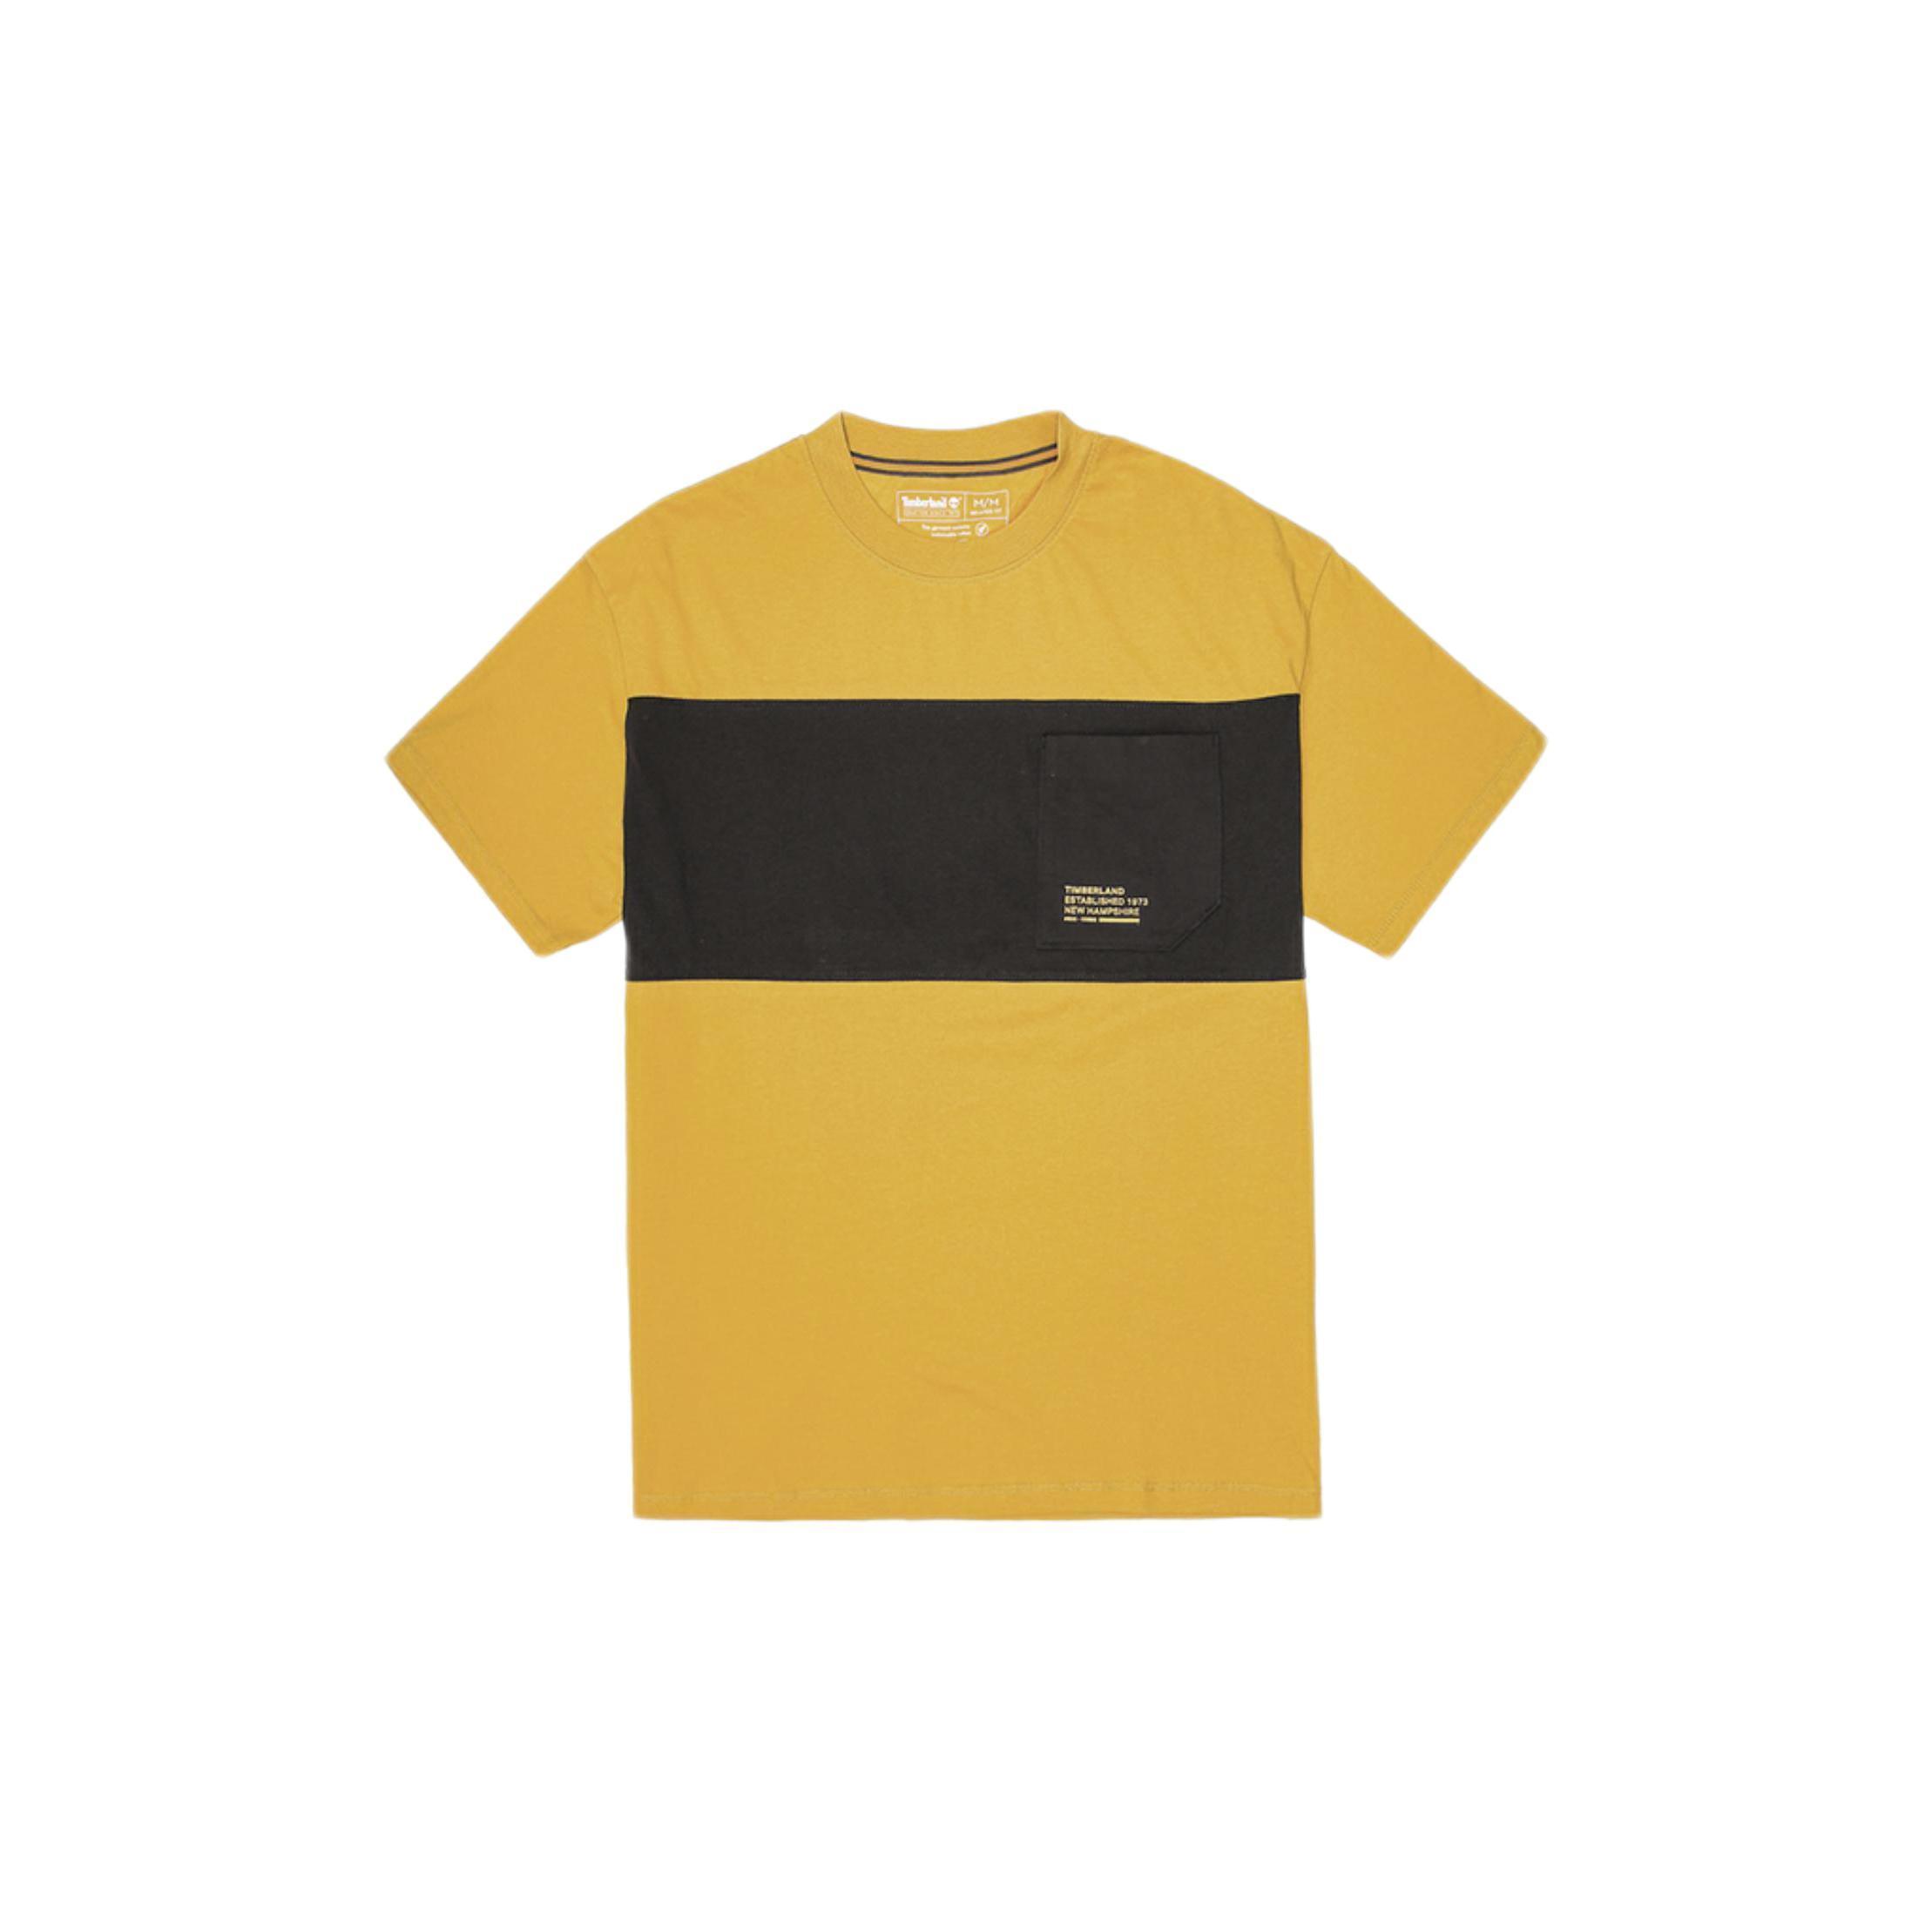 Timberland 男子户外T恤 A2EKW-311 黄色 S 78.98元